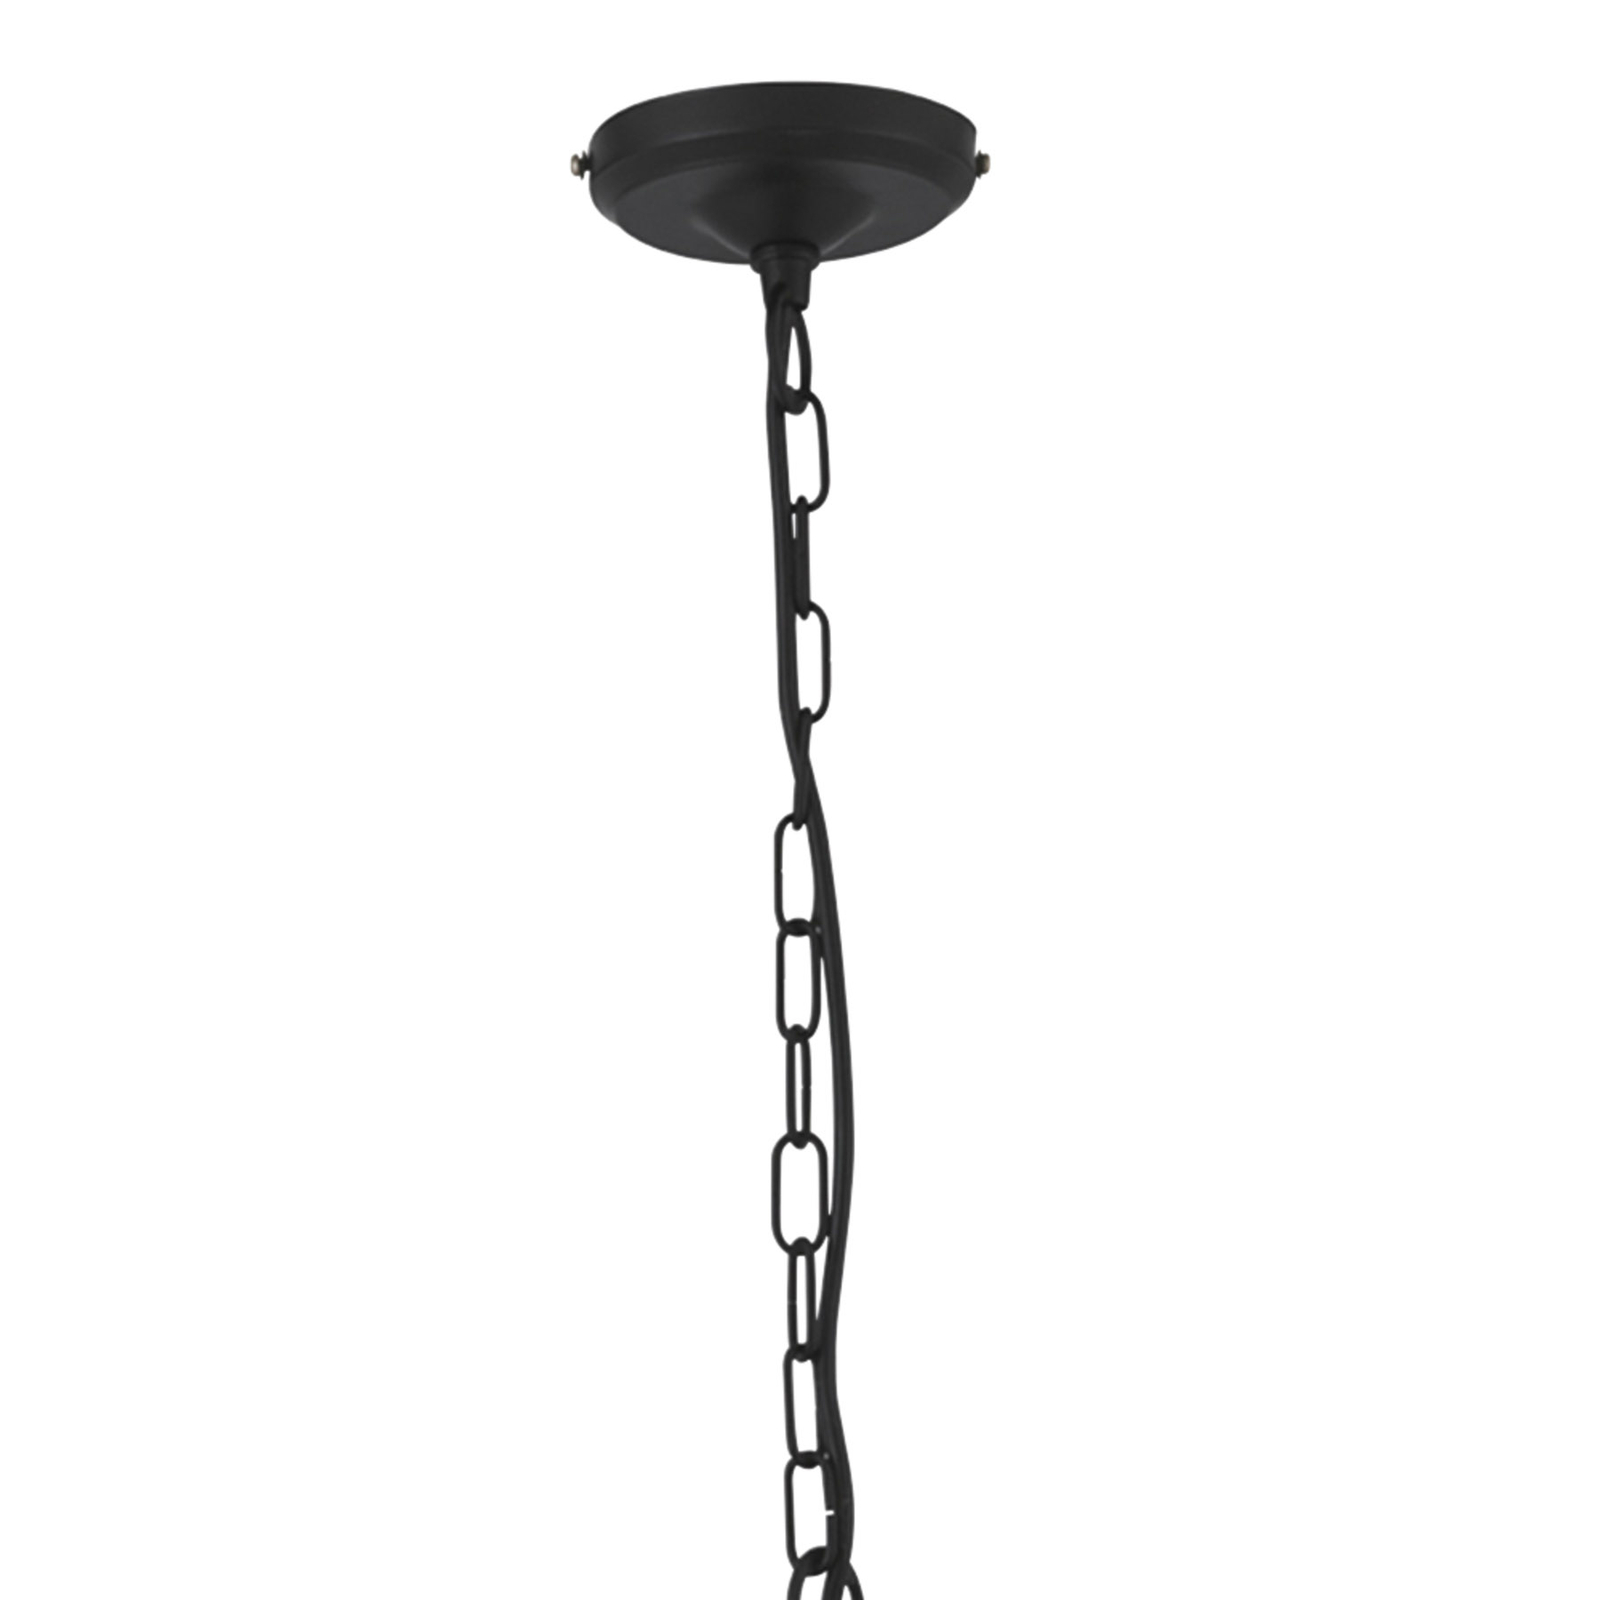 Lantern-riippuvalo, musta, 4-lamppuinen